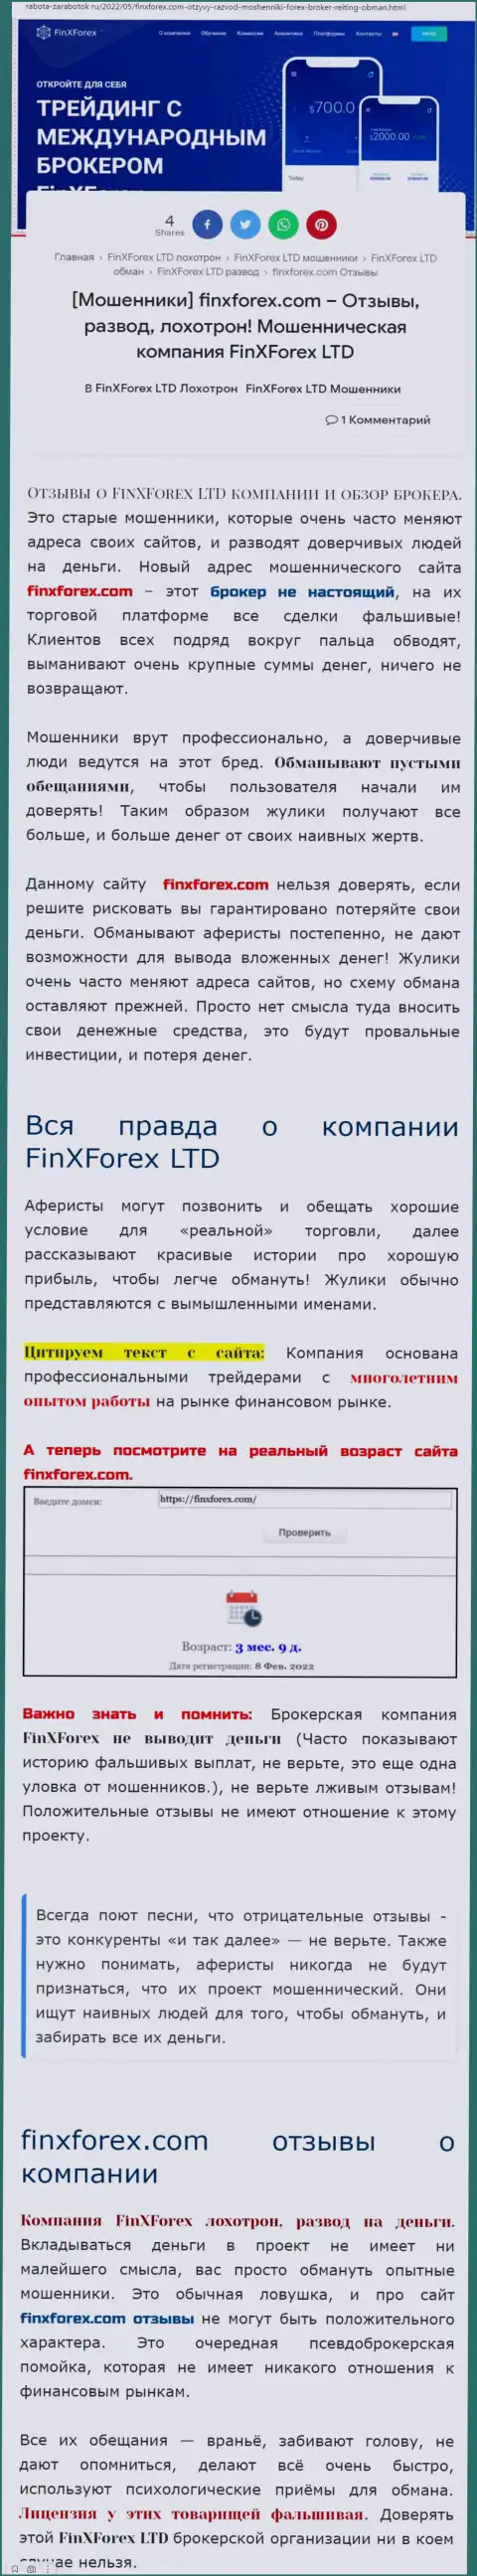 Автор обзорной статьи о FinXForex LTD утверждает, что в конторе FinXForex Com обманывают